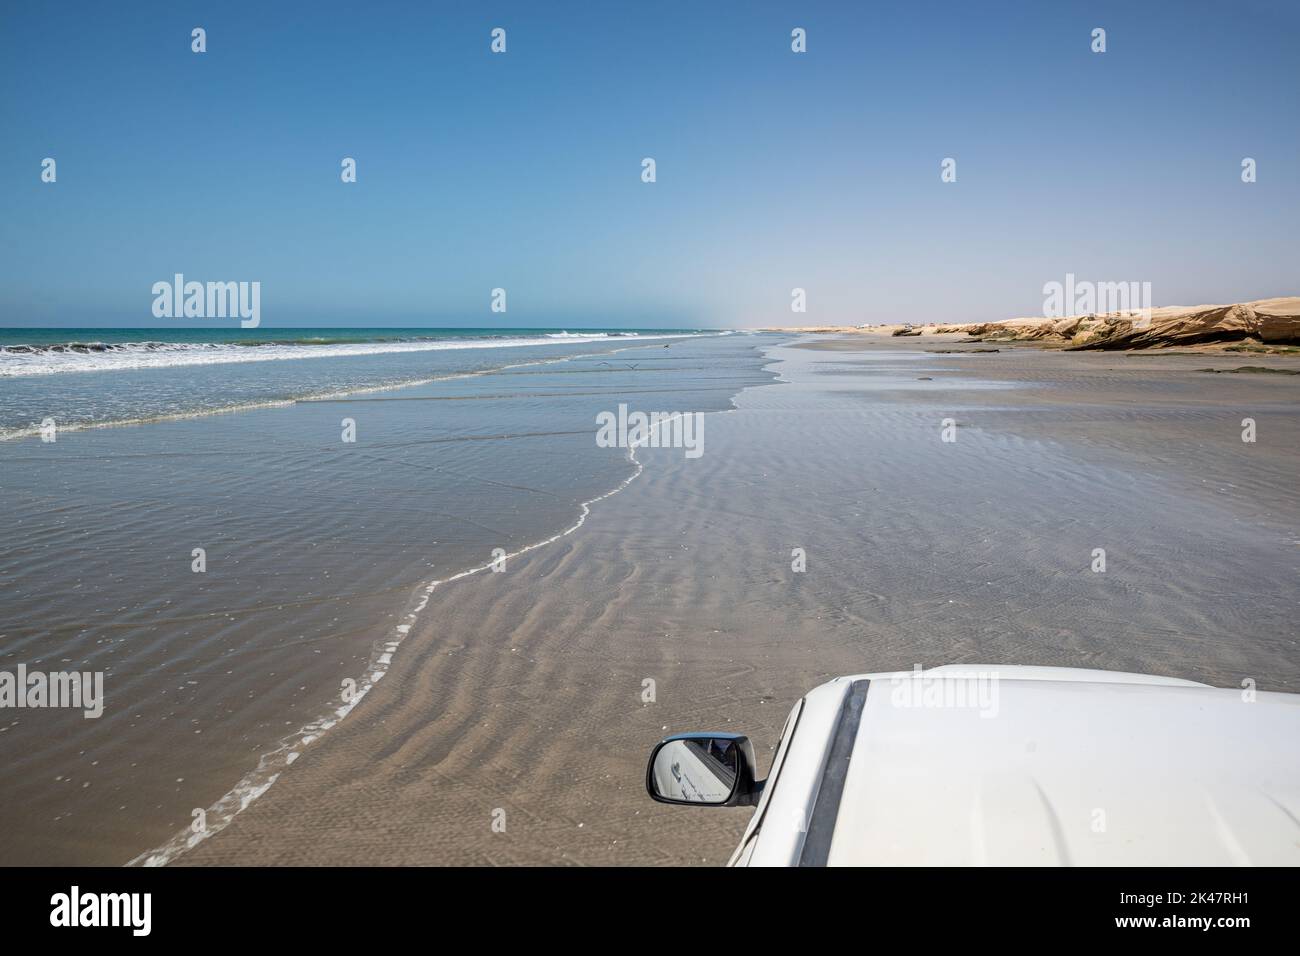 Conduite en 4x4 sur une plage de sable à marée basse, dans le sud de l'Oman Banque D'Images